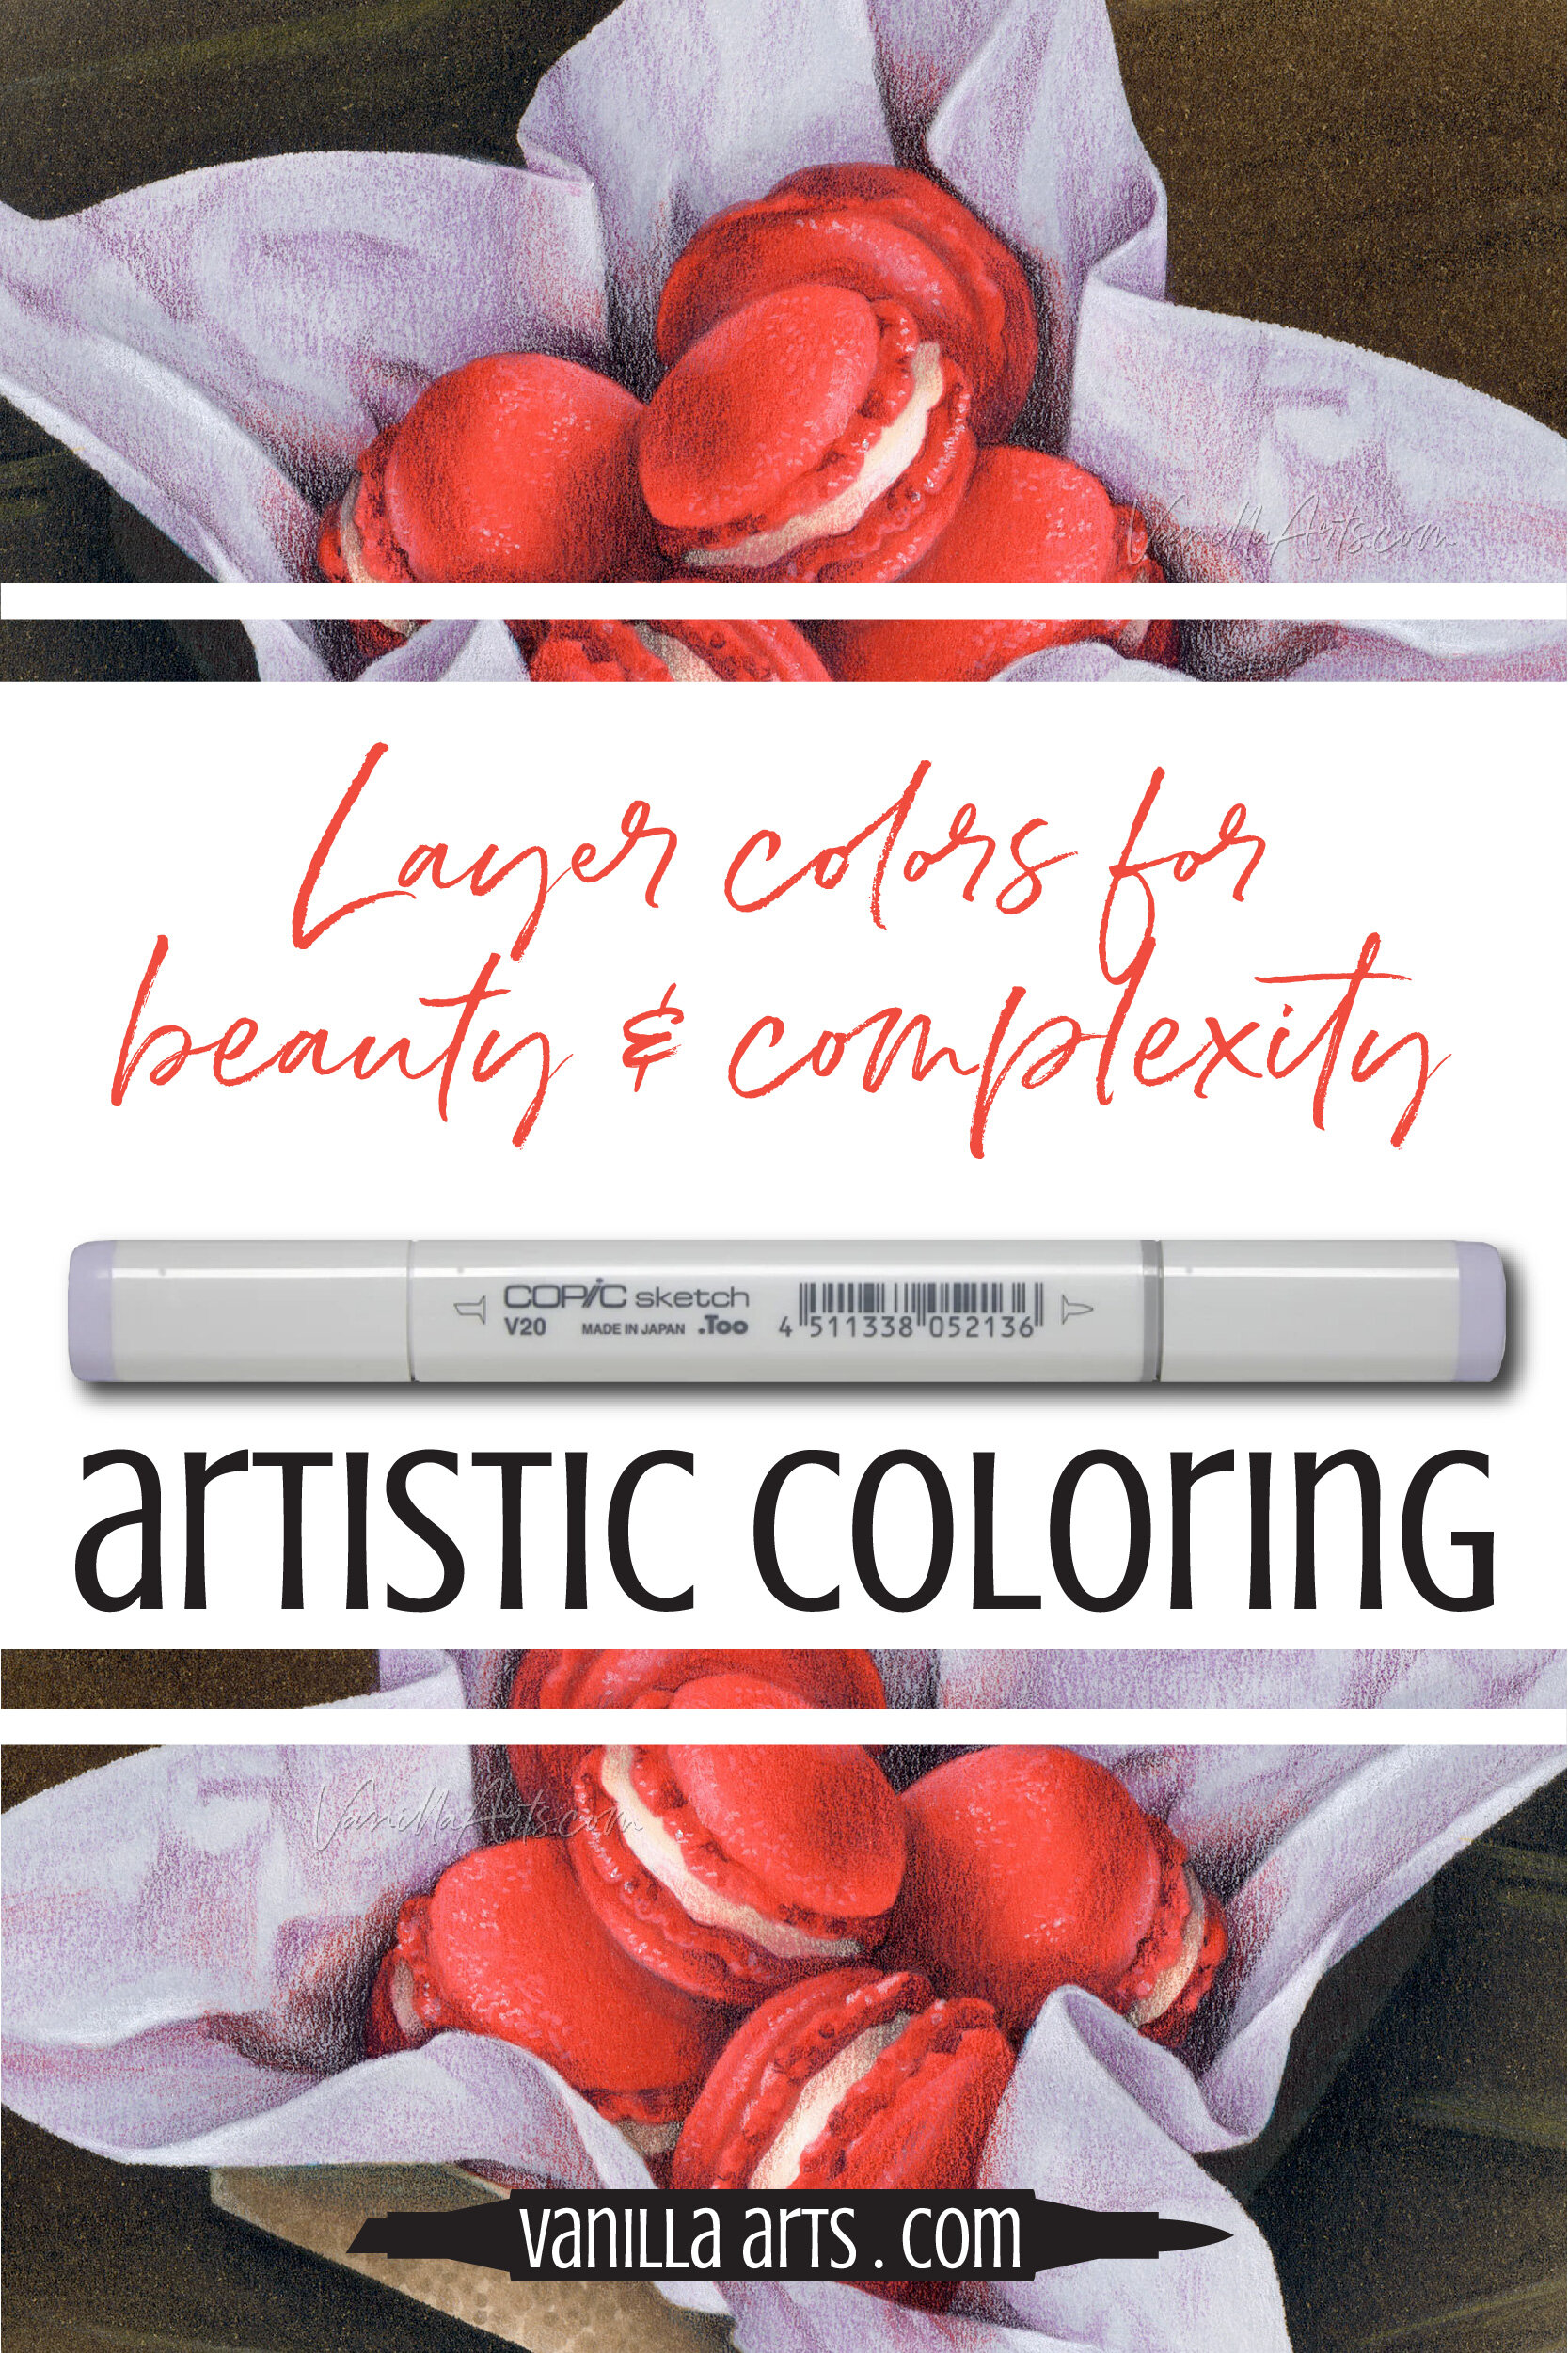 https://images.squarespace-cdn.com/content/v1/54ef7abde4b0b483325a0554/1608665977041-BCA5Q69Y5IEHGR8GRFBO/Layer+colors+for+beautiful+complexity.+Copic+Marker%2C+colored+pencils.+VanillaArts.com